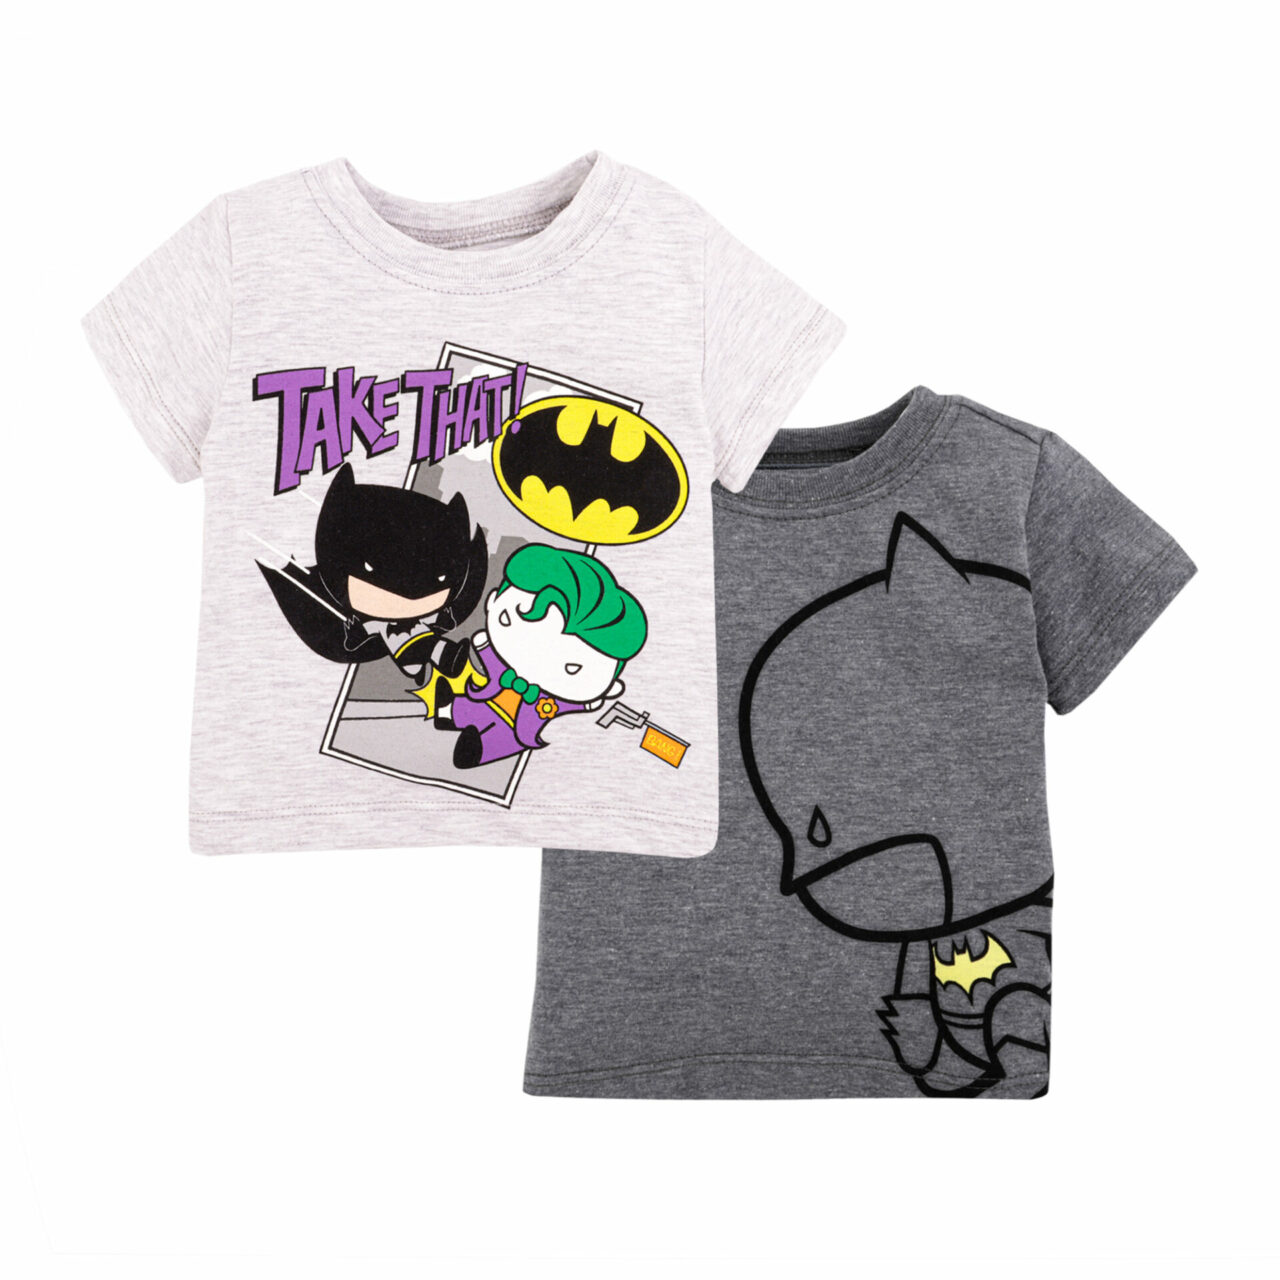 Baby Creysi lanza una colección limitada inspirada en Batman